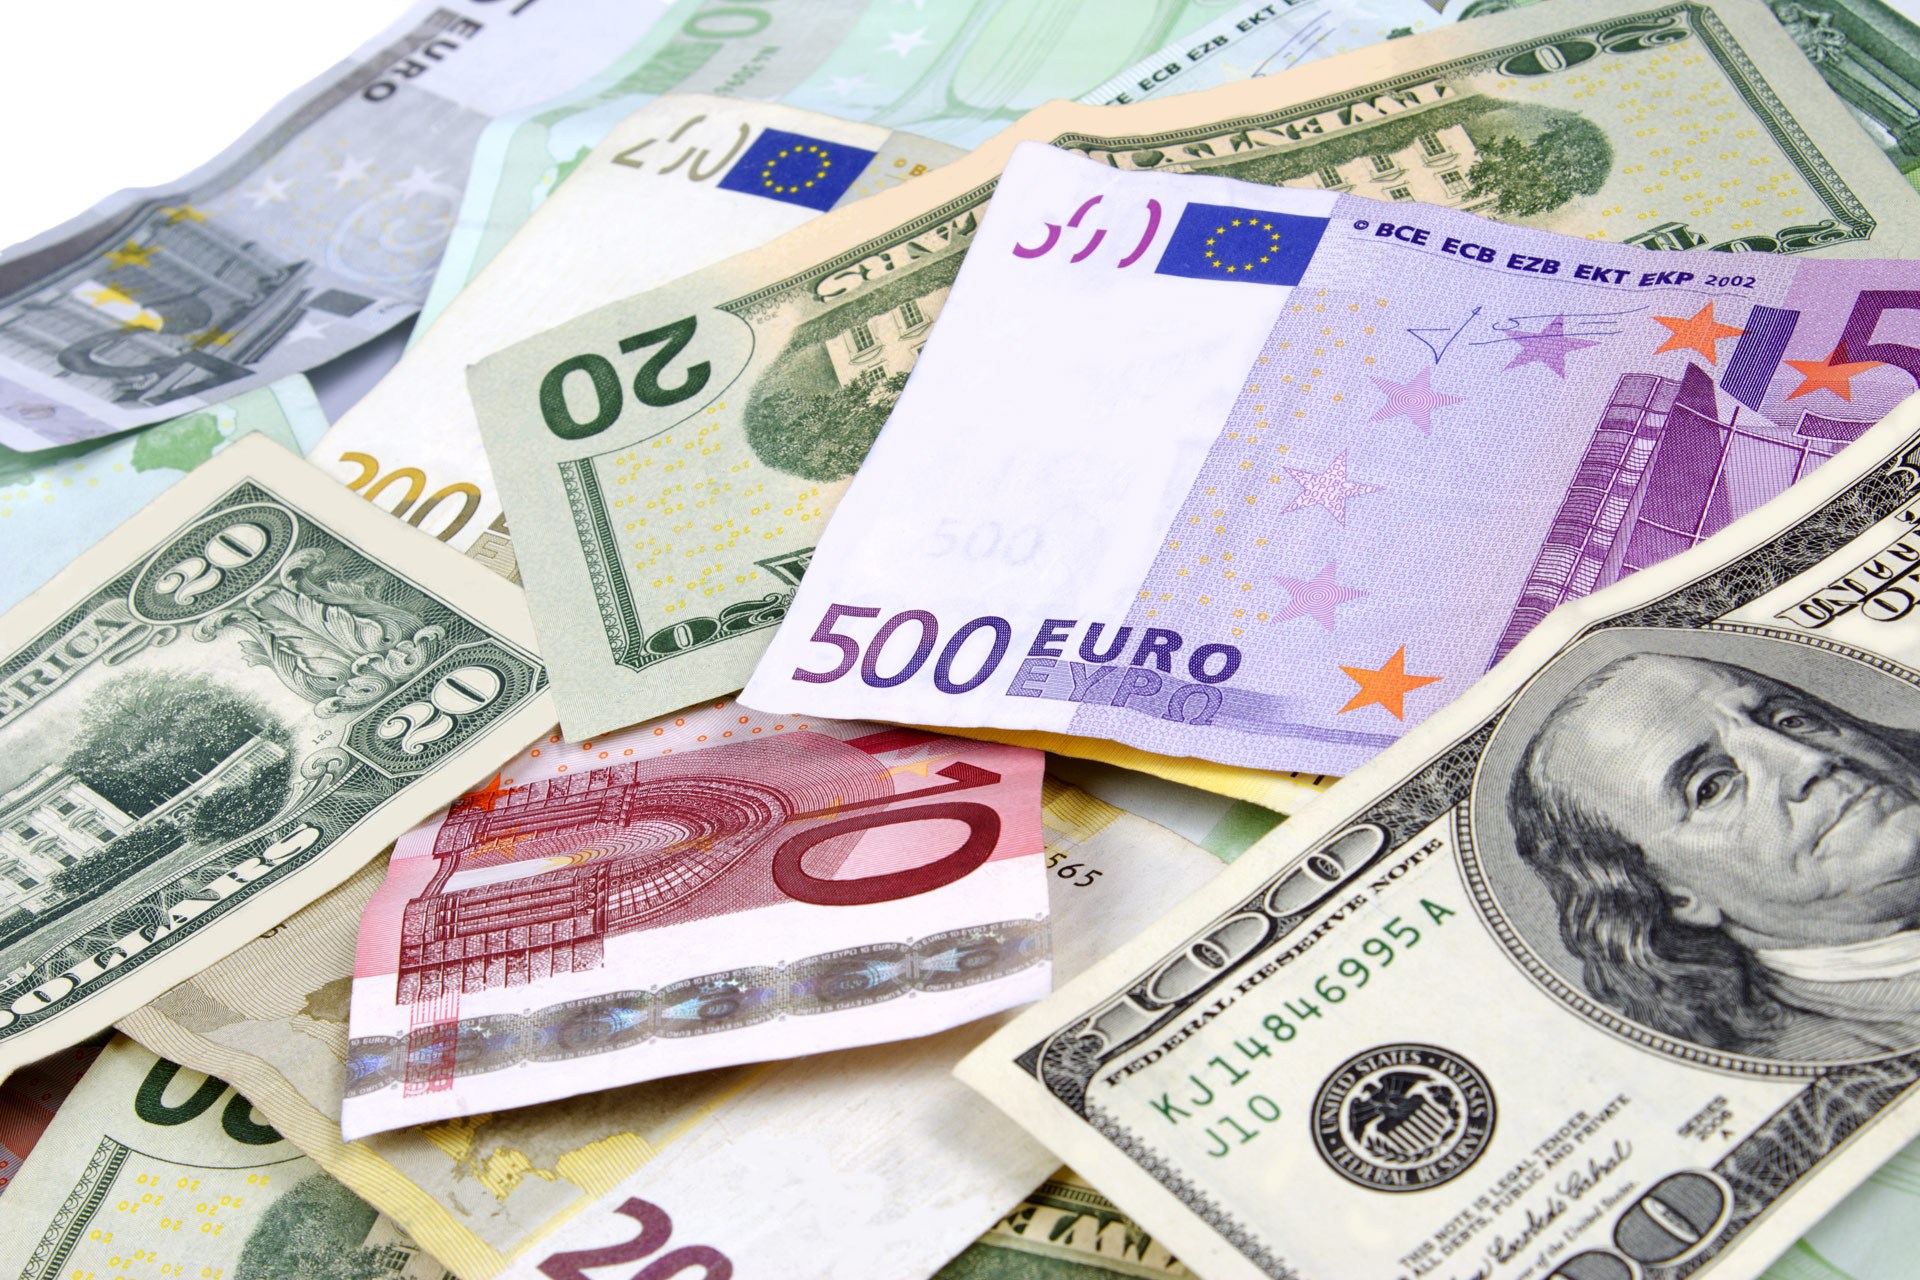 اليورو يحتفظ بمكاسبه مقابل الدولار بفعل توقعات بتباطؤ اقتصاد أمريكا - جريدة حابي